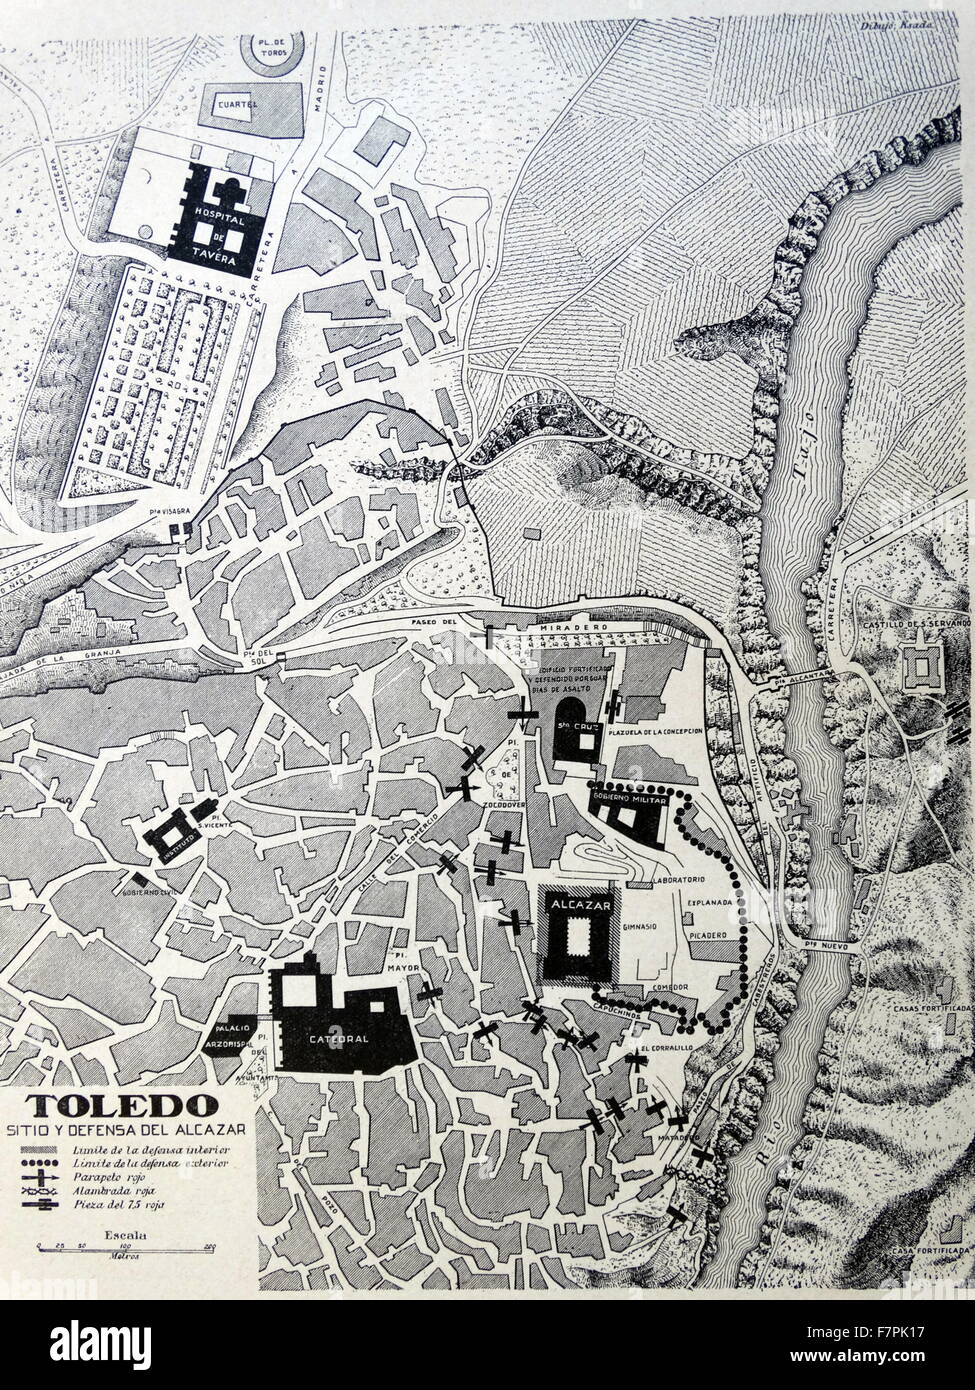 Mappa illustrata di Toledo, Spagna. Datata 1937 Foto Stock